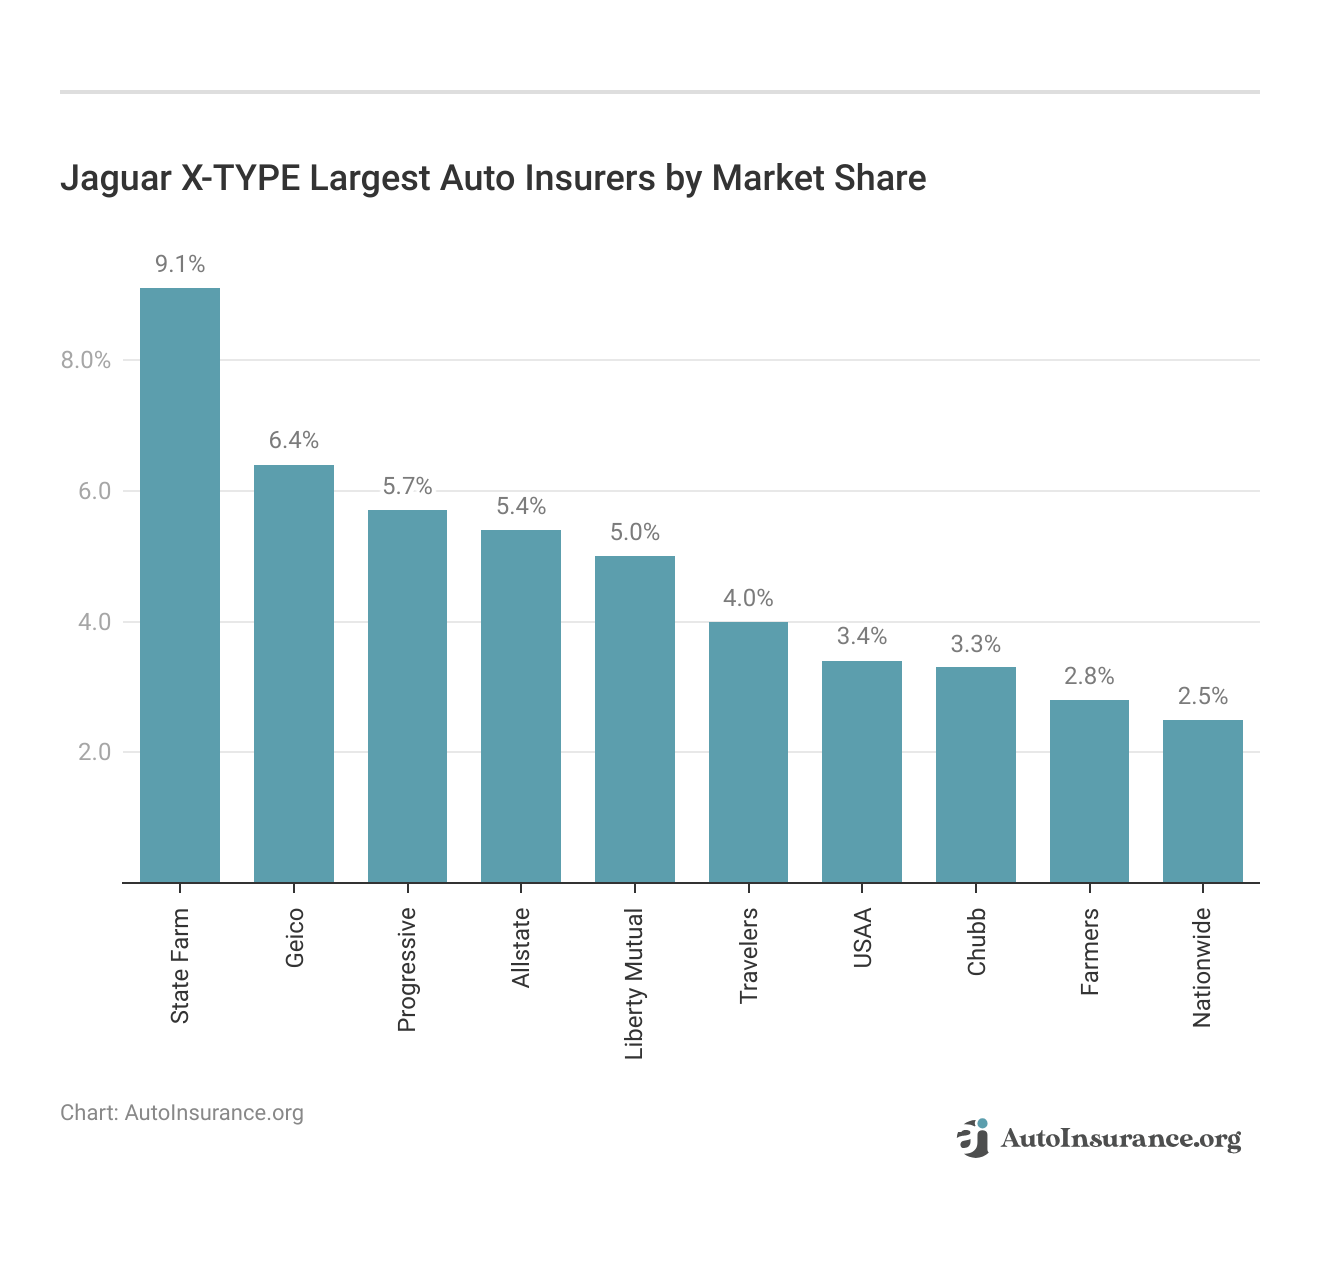 <h3>Jaguar X-TYPE Largest Auto Insurers by Market Share</h3>